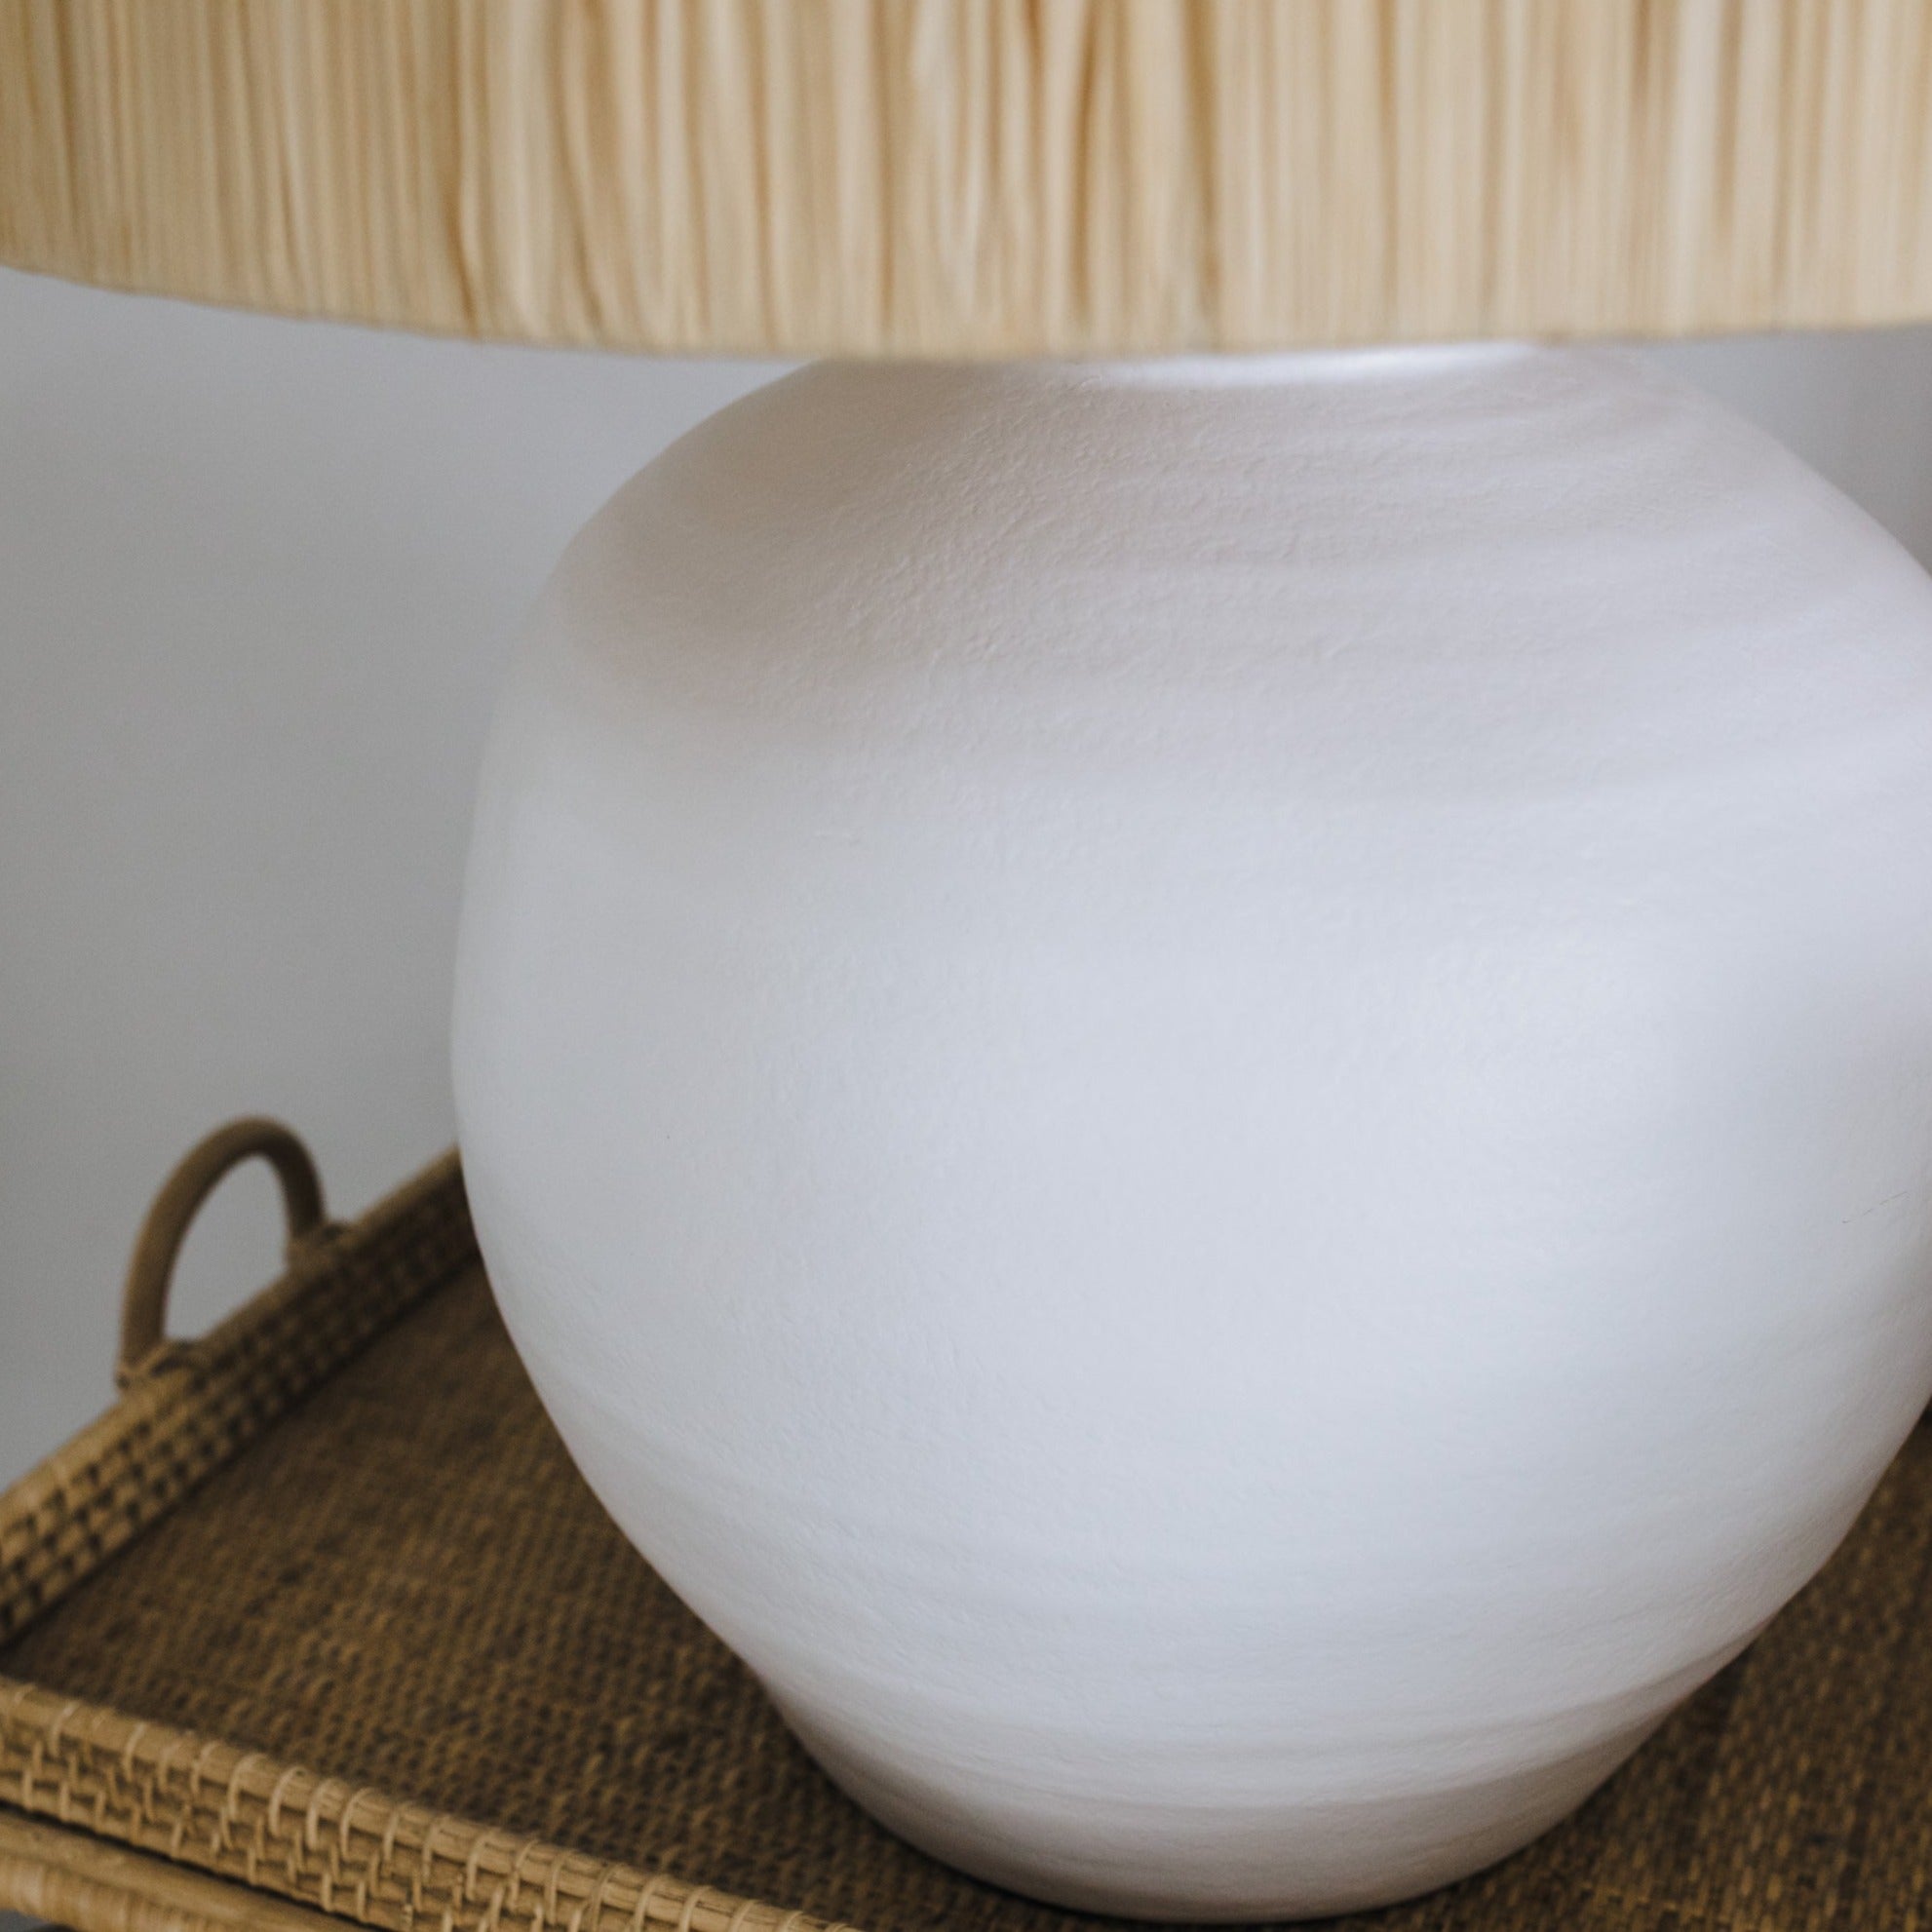 Pot Lamp Base | White